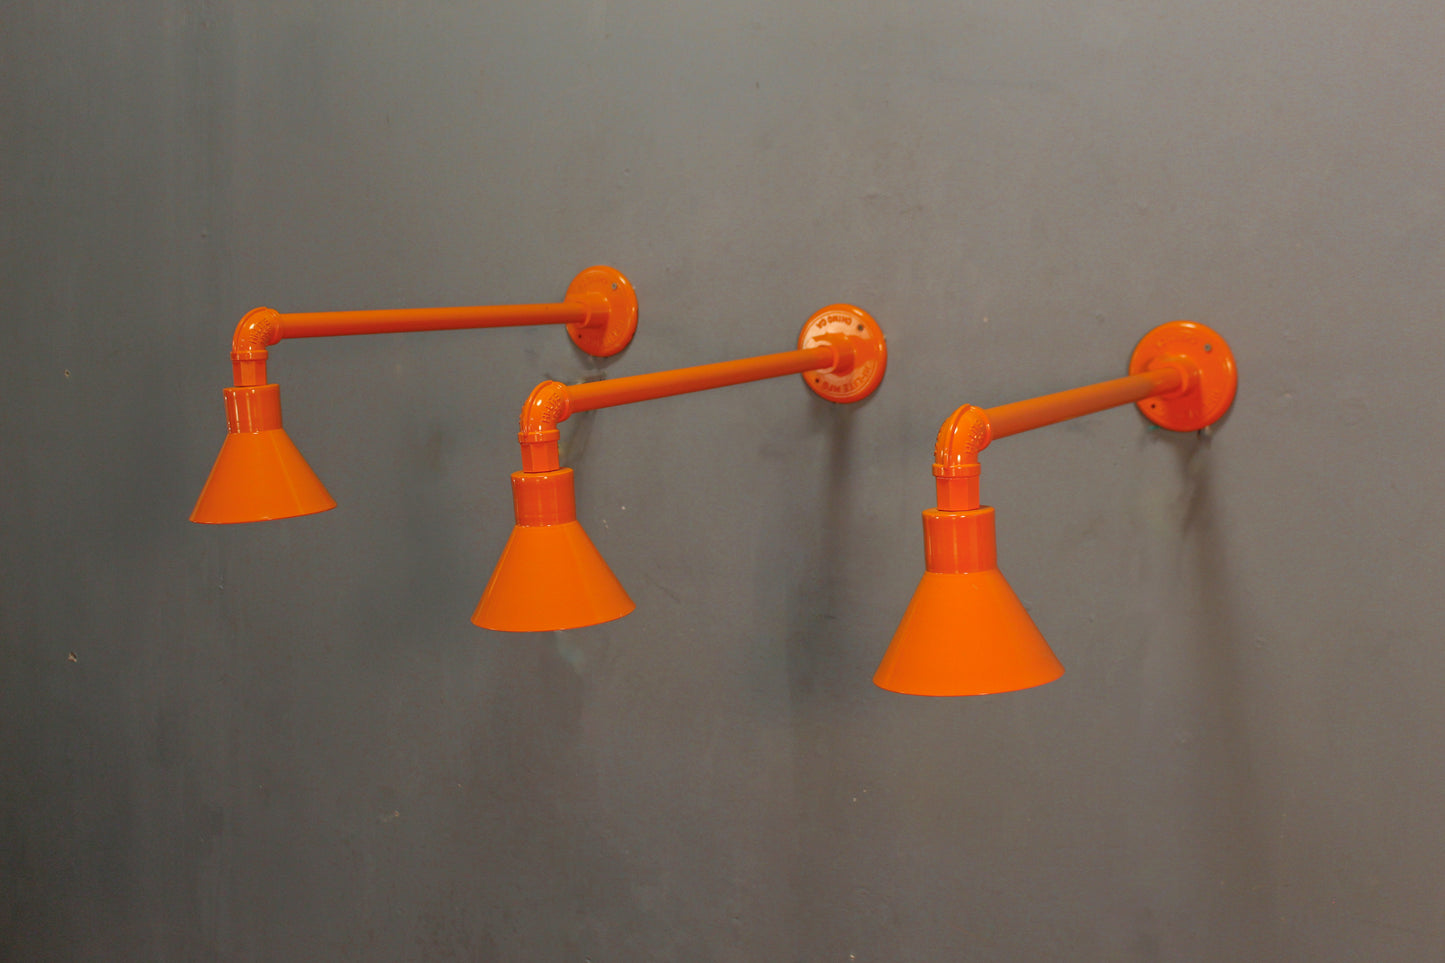 Hi-Lite Industrial Orange Sconce